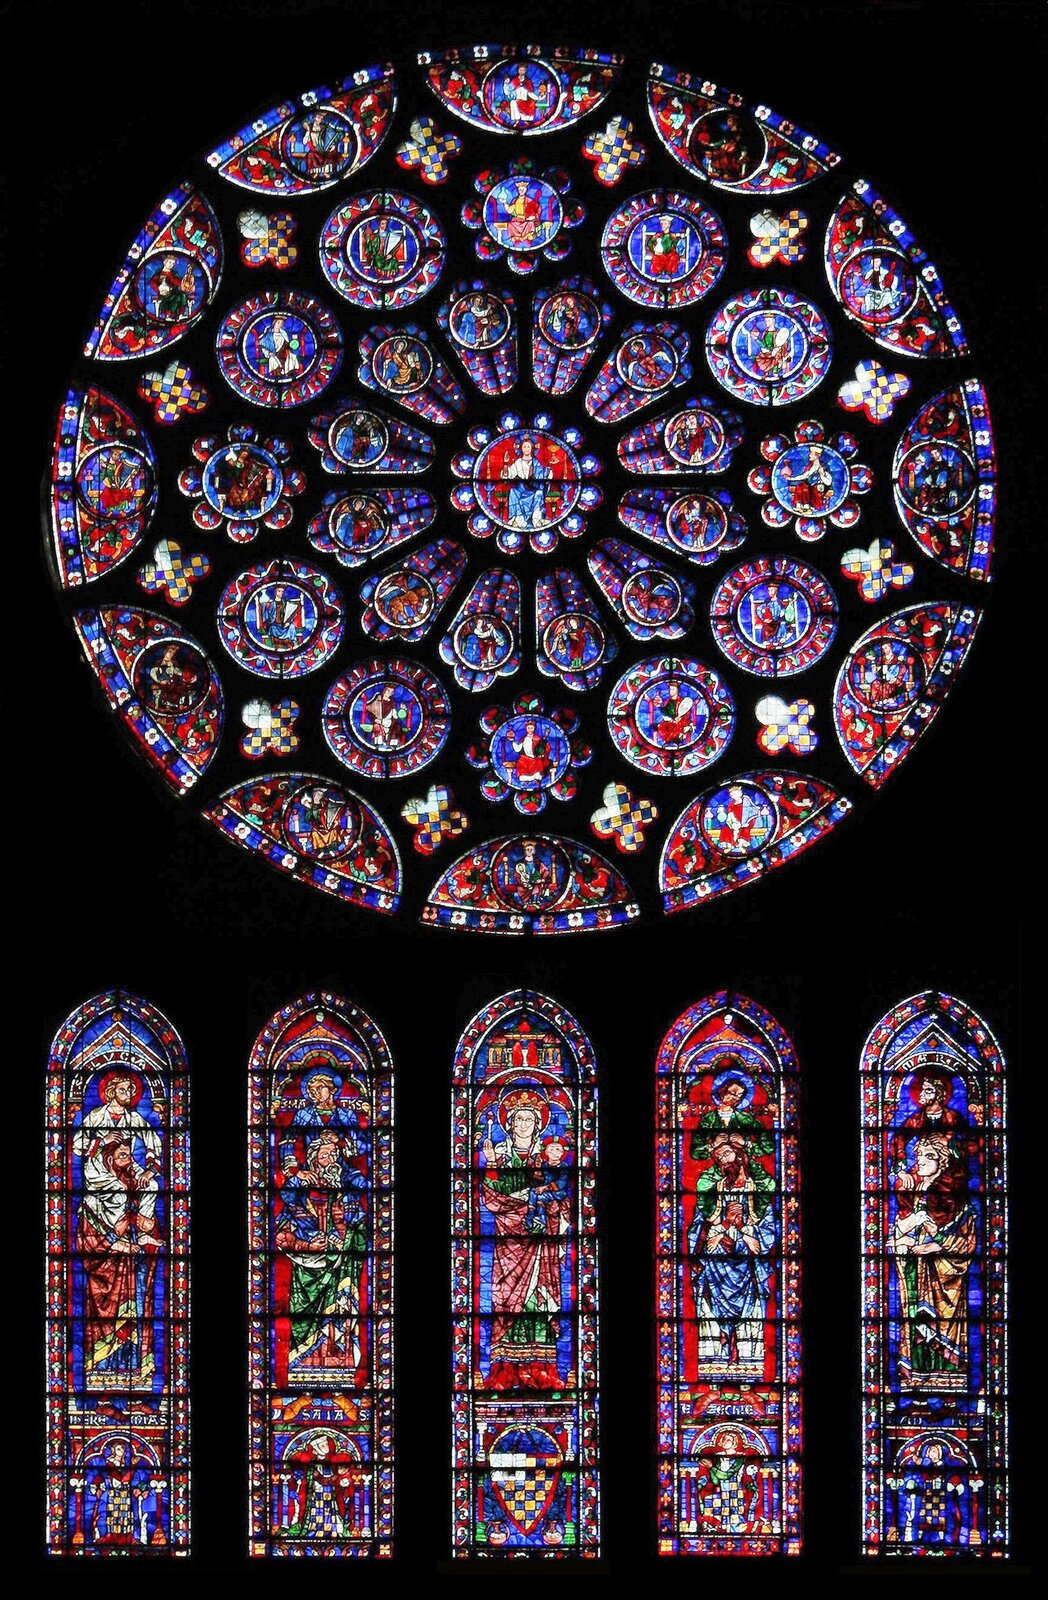 Zdjęcie przedstawia rozetę i pięć podłużnych okien z witrażami umieszczonymi poniżej rozety w Katedrze Chartres. W centralnej części rozety znajduje się Jezus Chrystus. Poniżej rozety znajdują się cztery smukłe witraże zakończone łukiem ostrym.